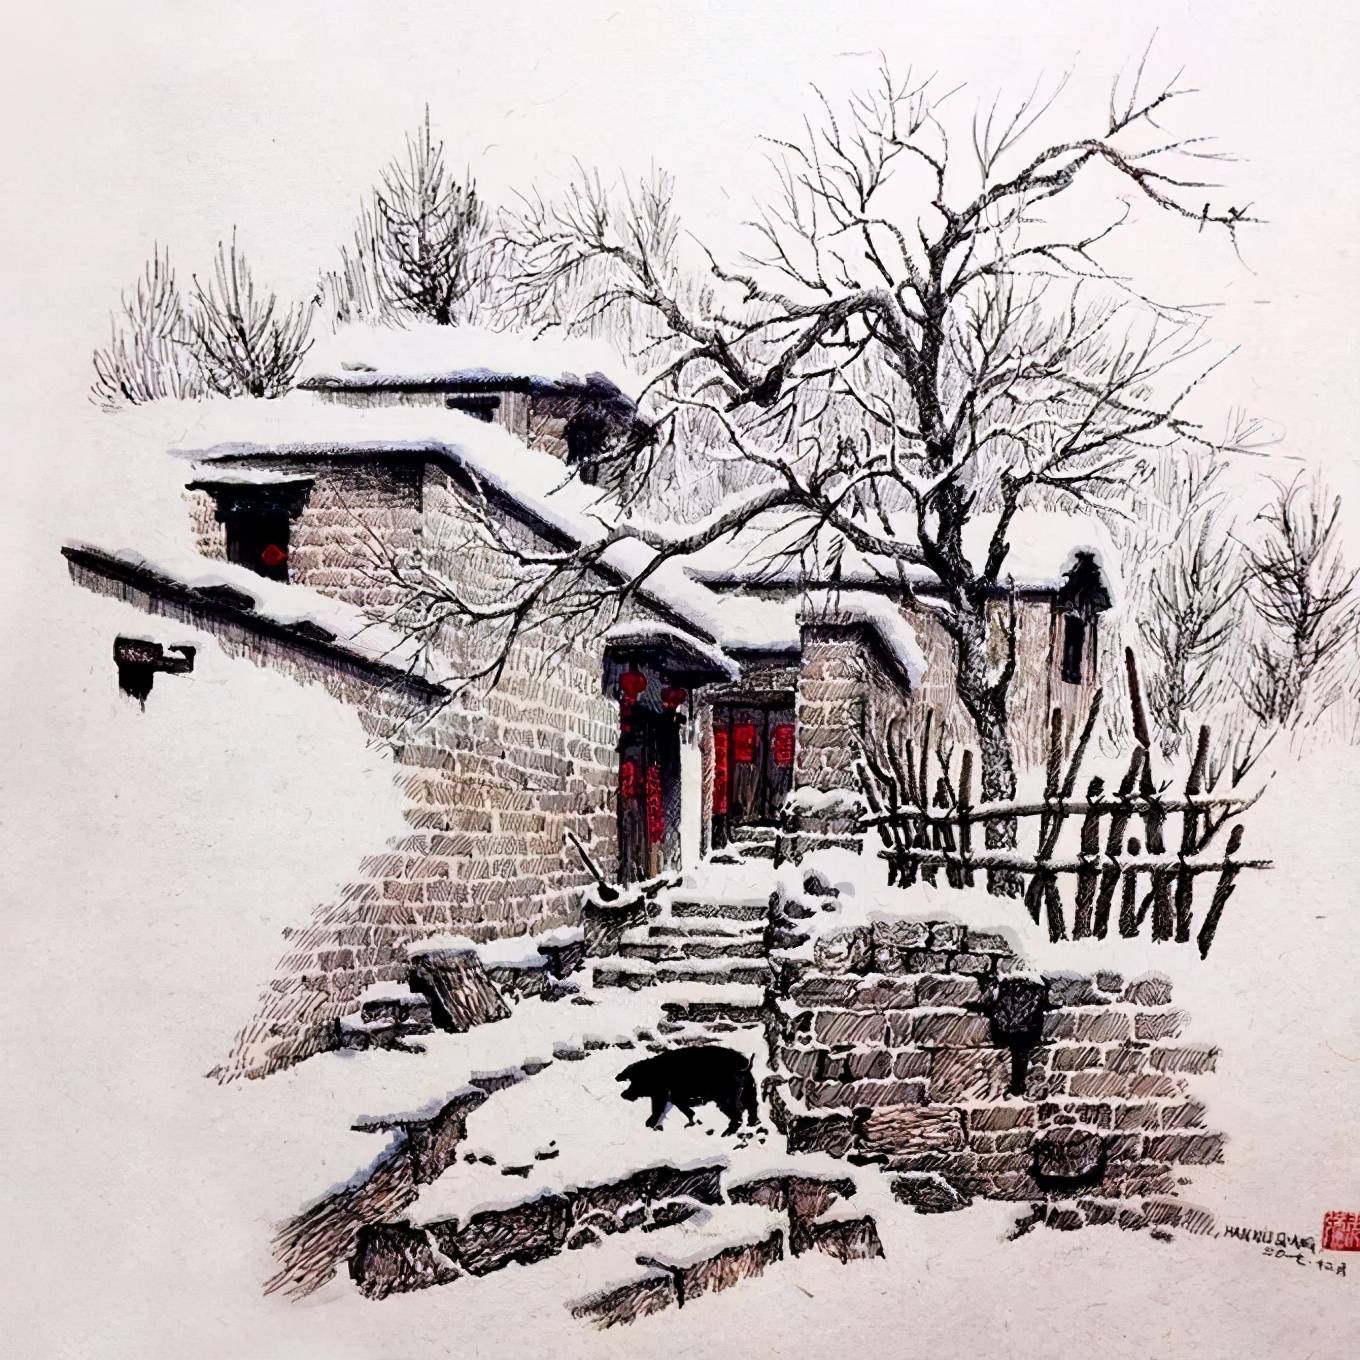 他用钢笔画出的古村雪景,饱含着回归家乡的亲切感